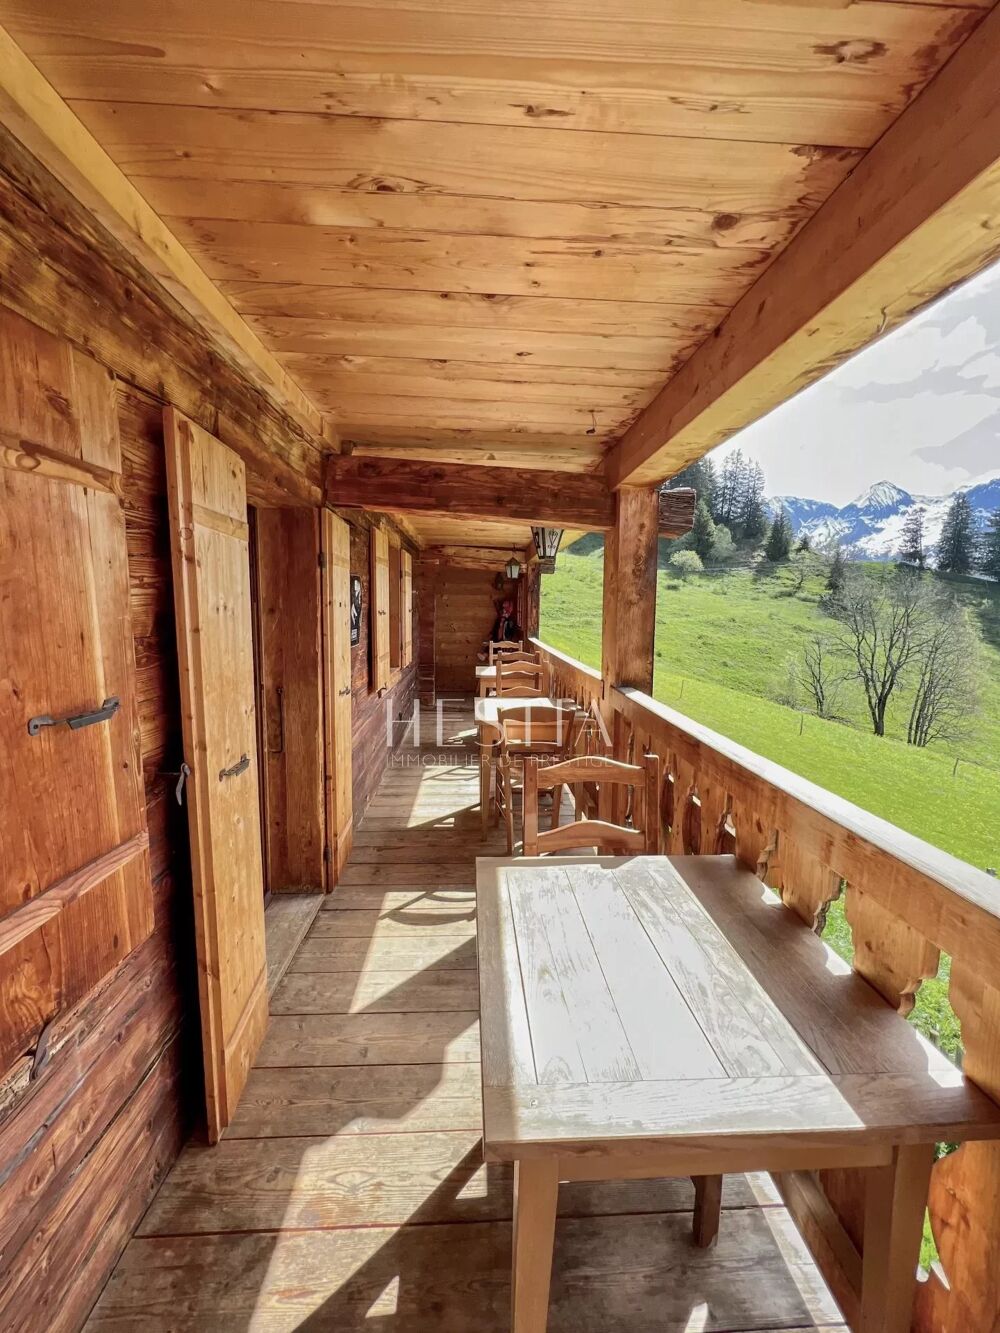 Vente Maison Authentique Ferme en bordure des pistes de Ski Le grand-bornand